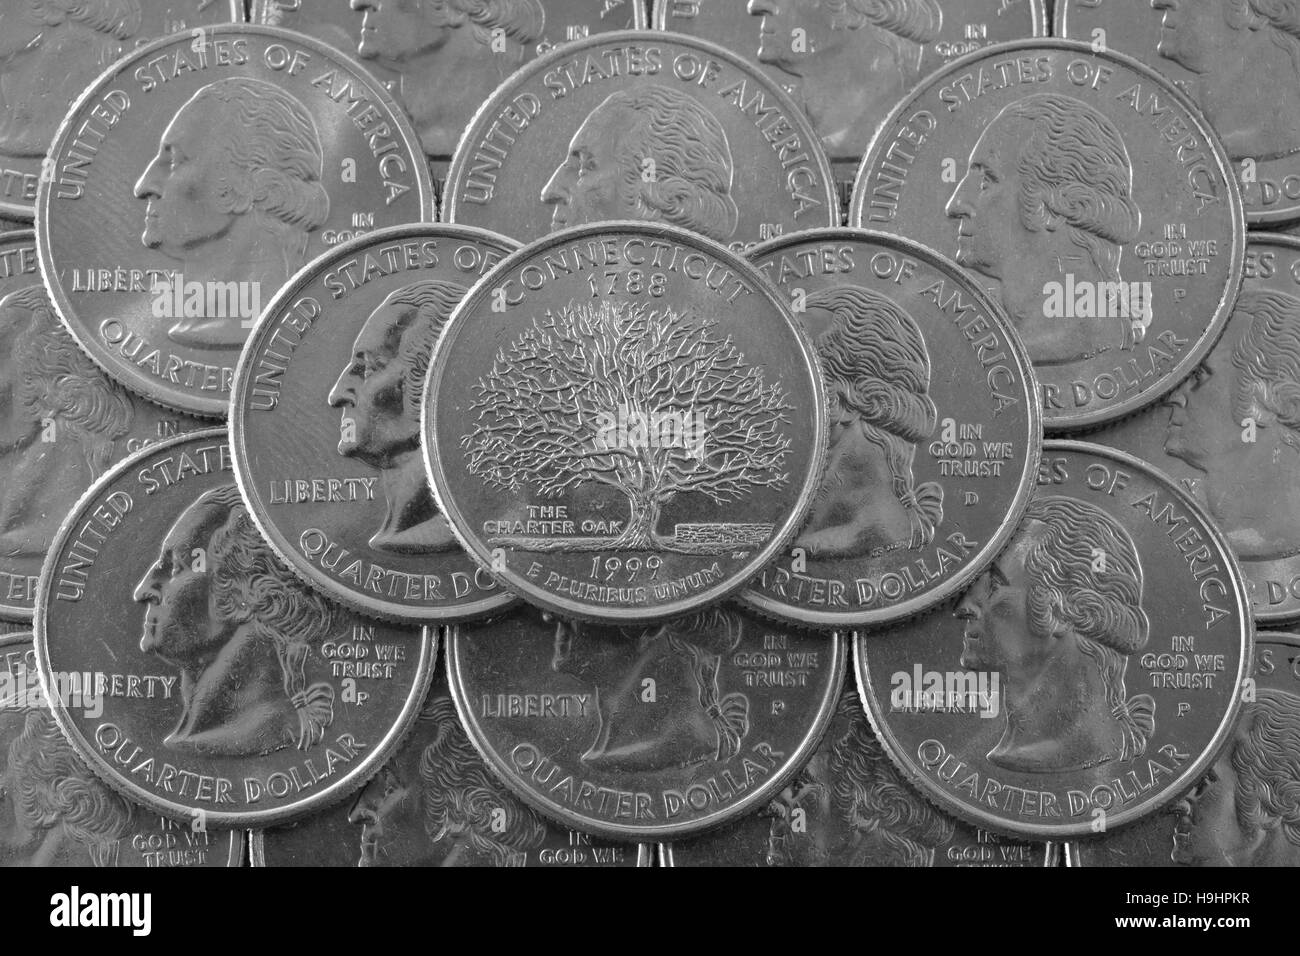 Coins des Etats-Unis. La pile de pièces de monnaie avec nous trimestre George Washington et sur le dessus un quart de l'État du Connecticut. Banque D'Images